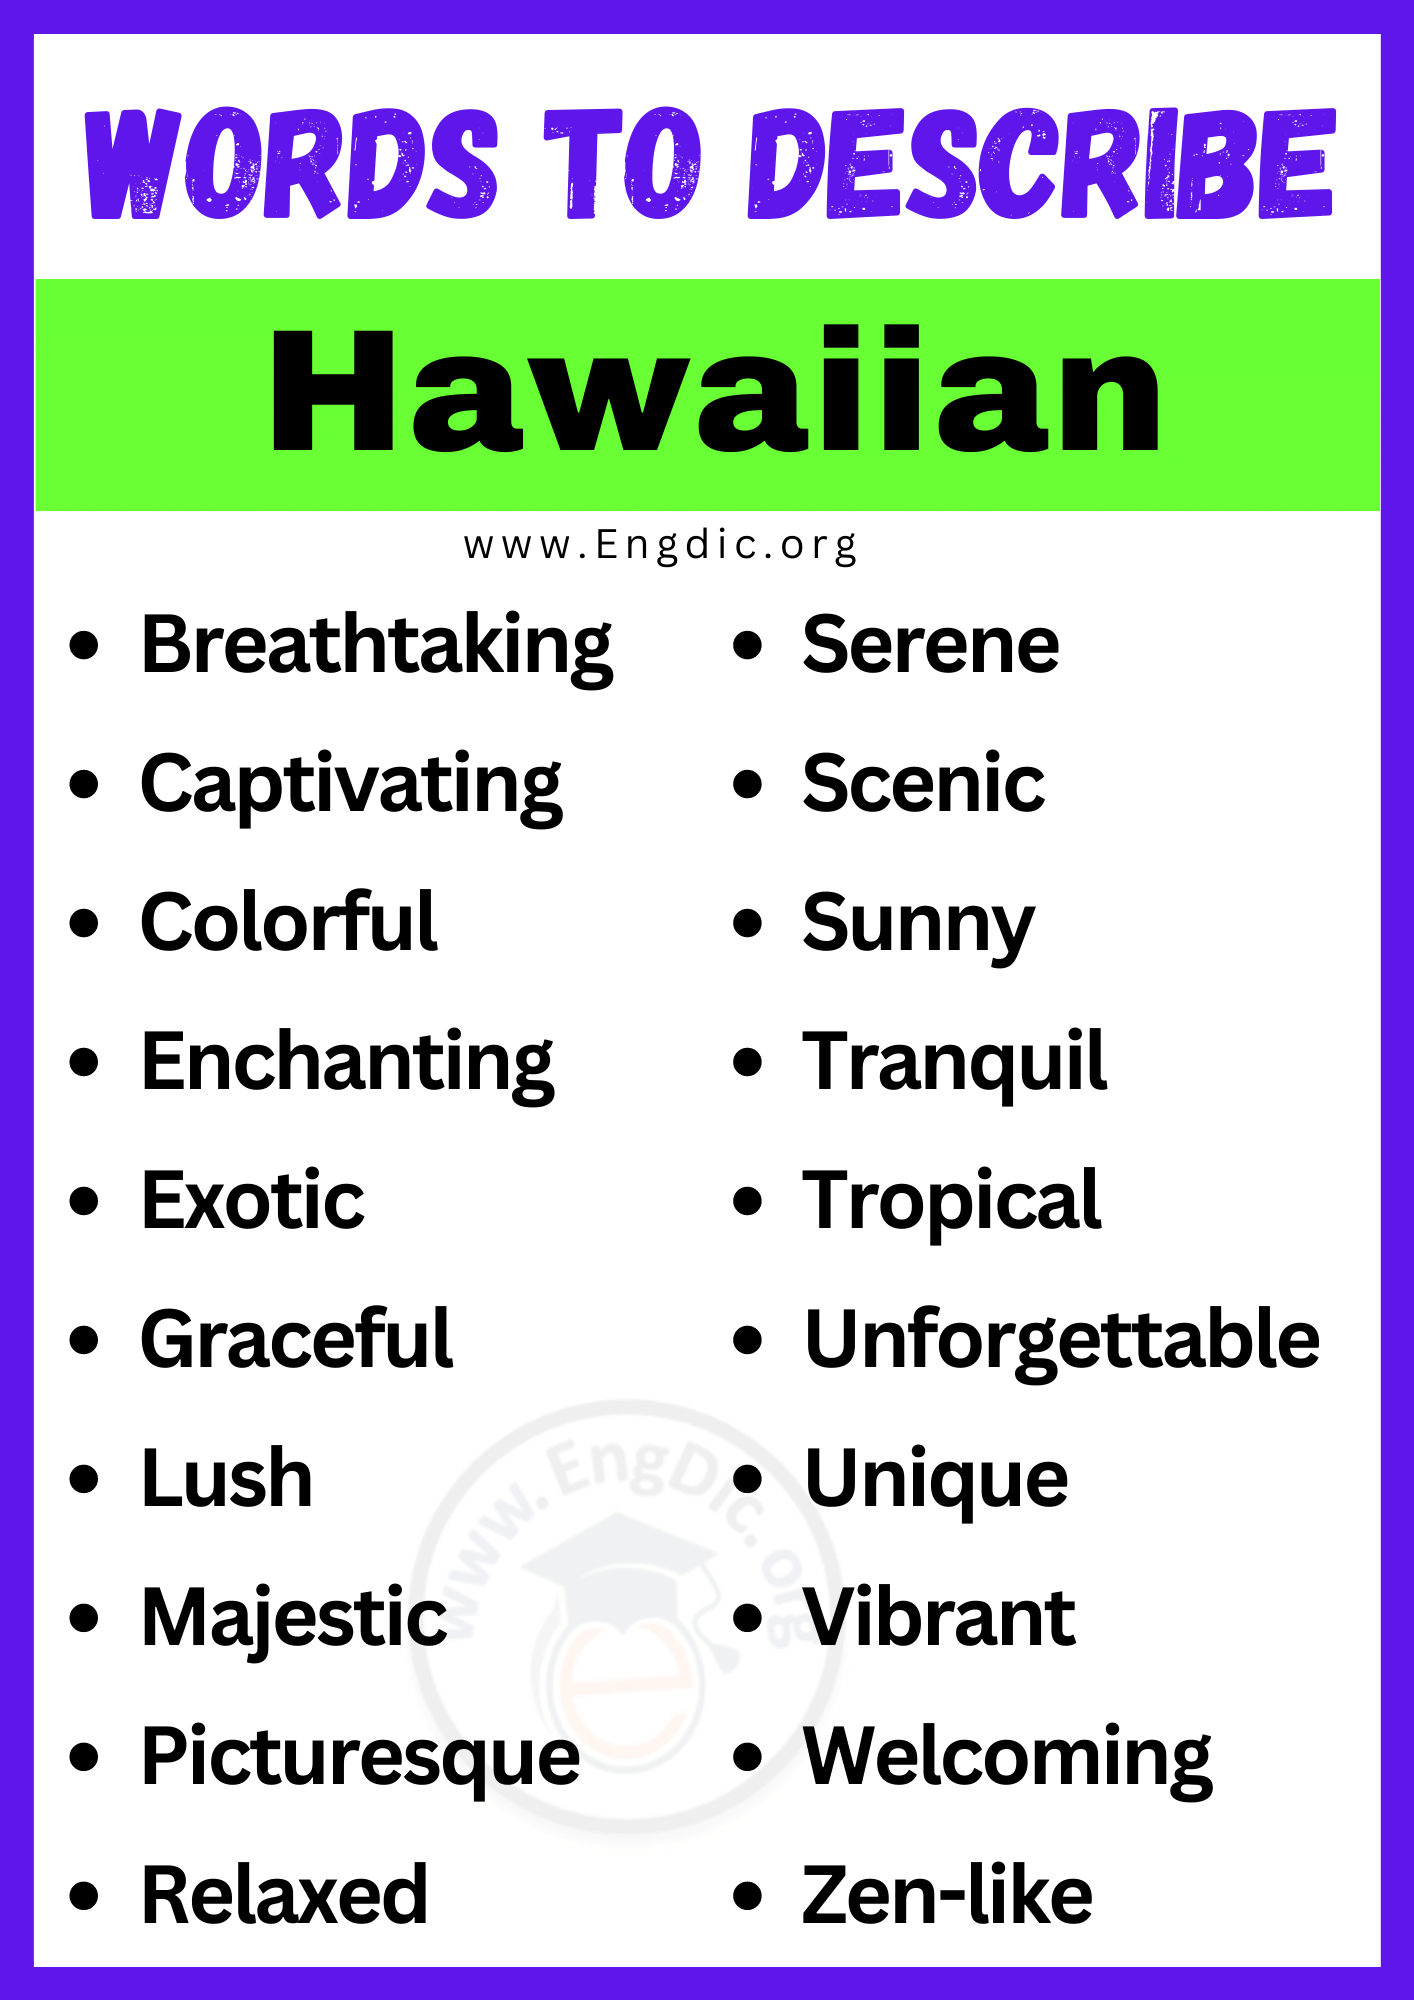 Words to Describe Hawaiian